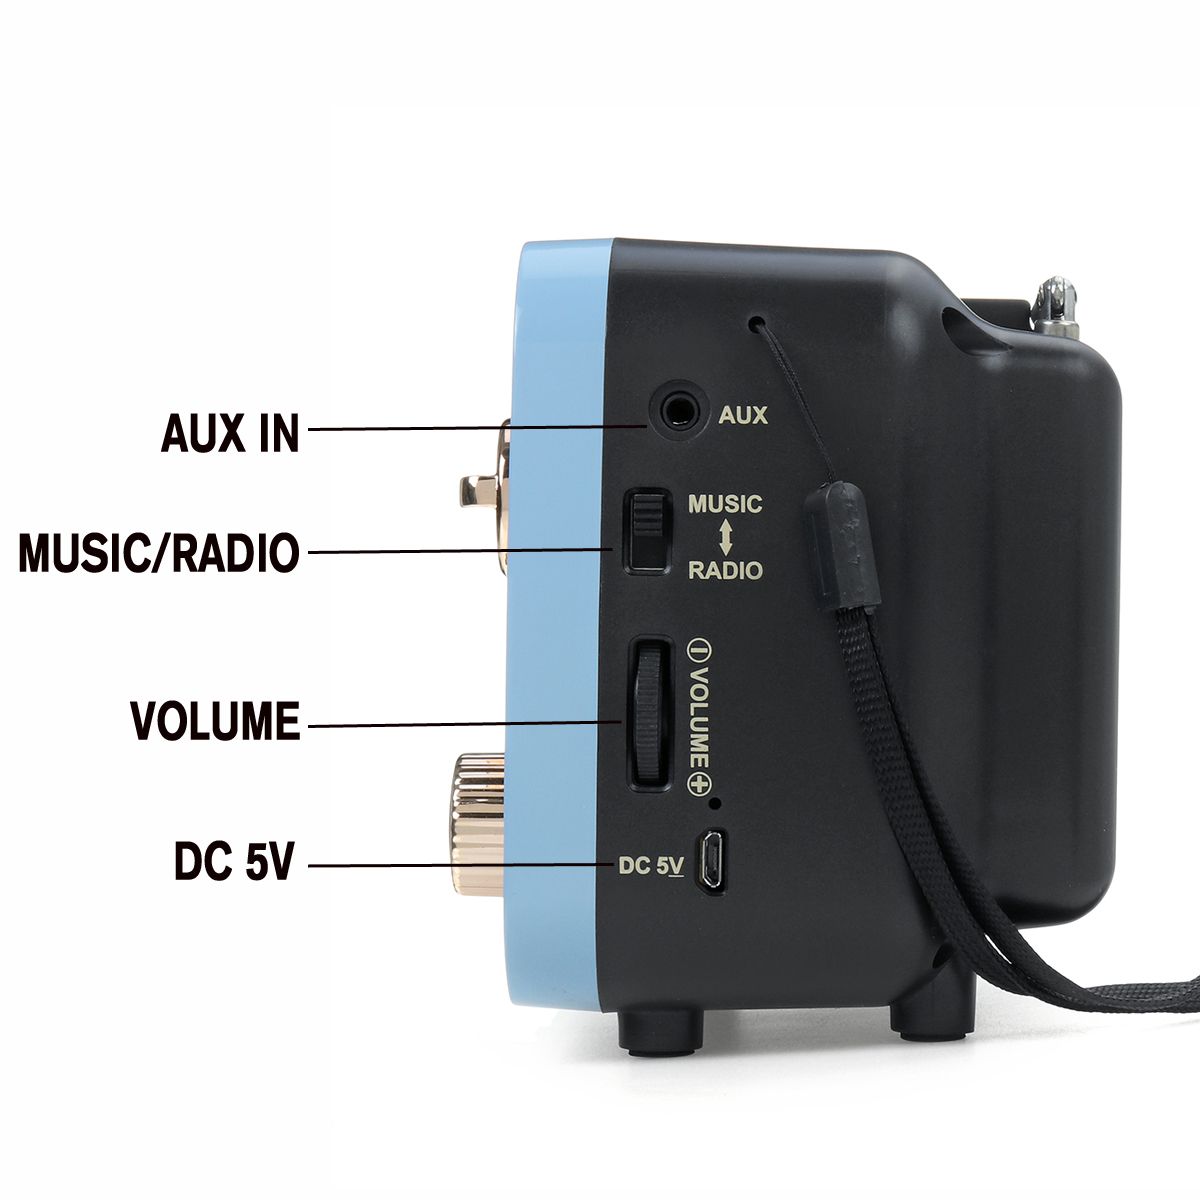 MD-309BT-Portable-Retro-FM-AM-SW-Radio-Bass-bluetooth-Speaker-MP3-Player-USB-AUX-TF-Card-1621137